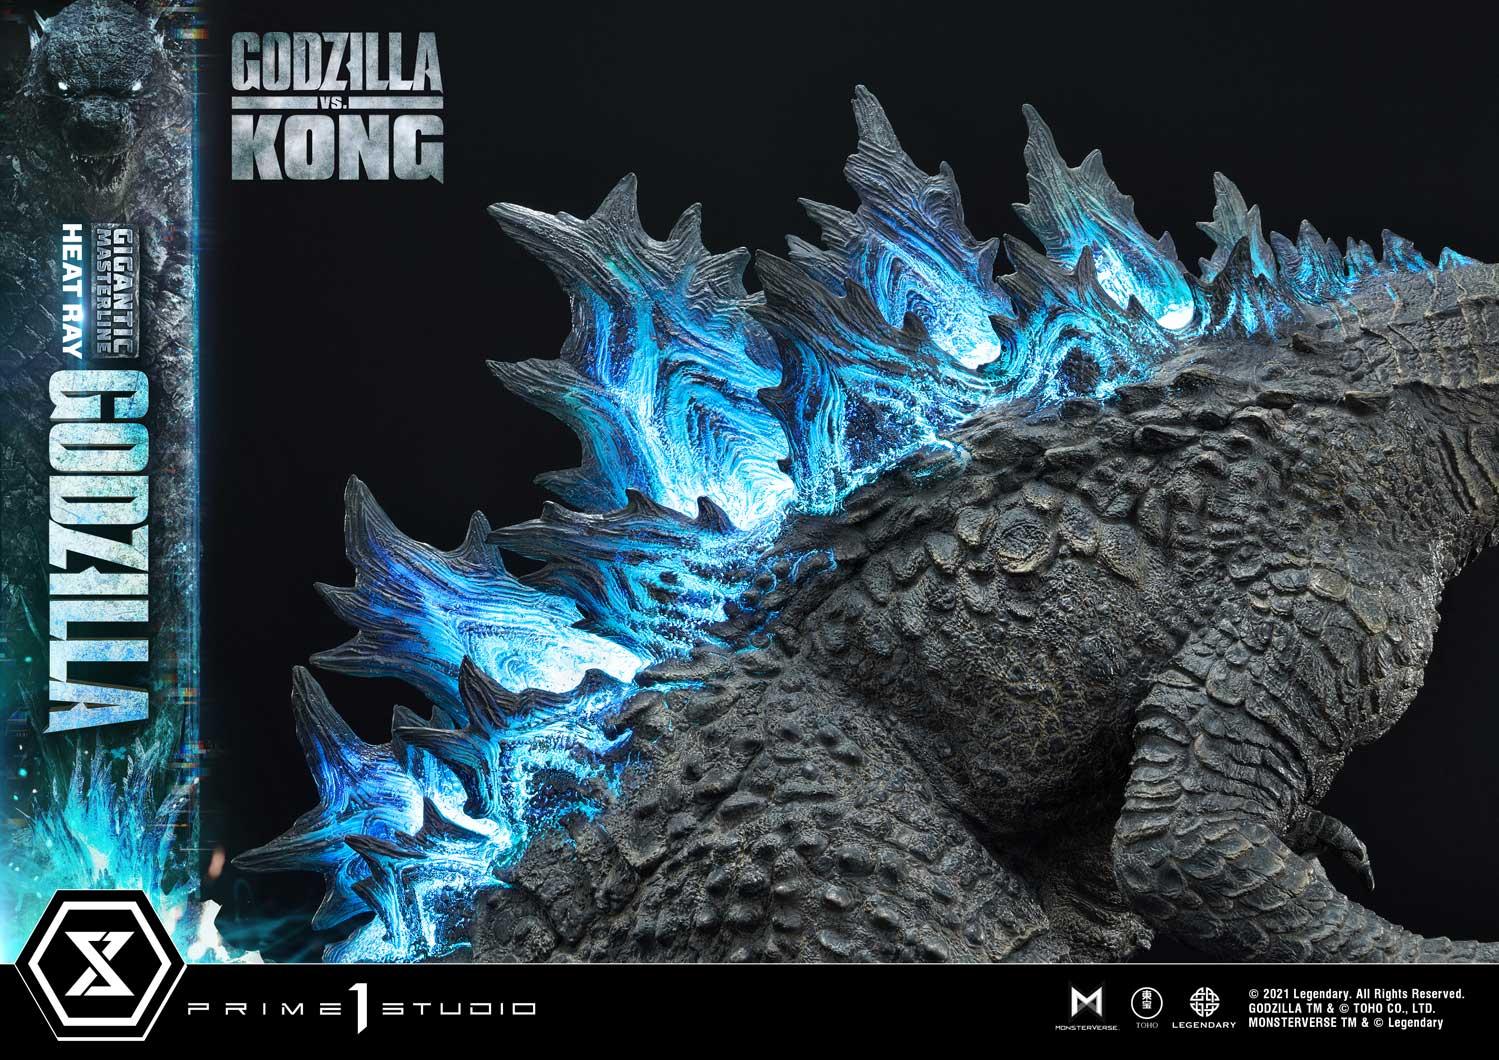 Kganya on X: Godzilla Earth from Godzilla, the titan.